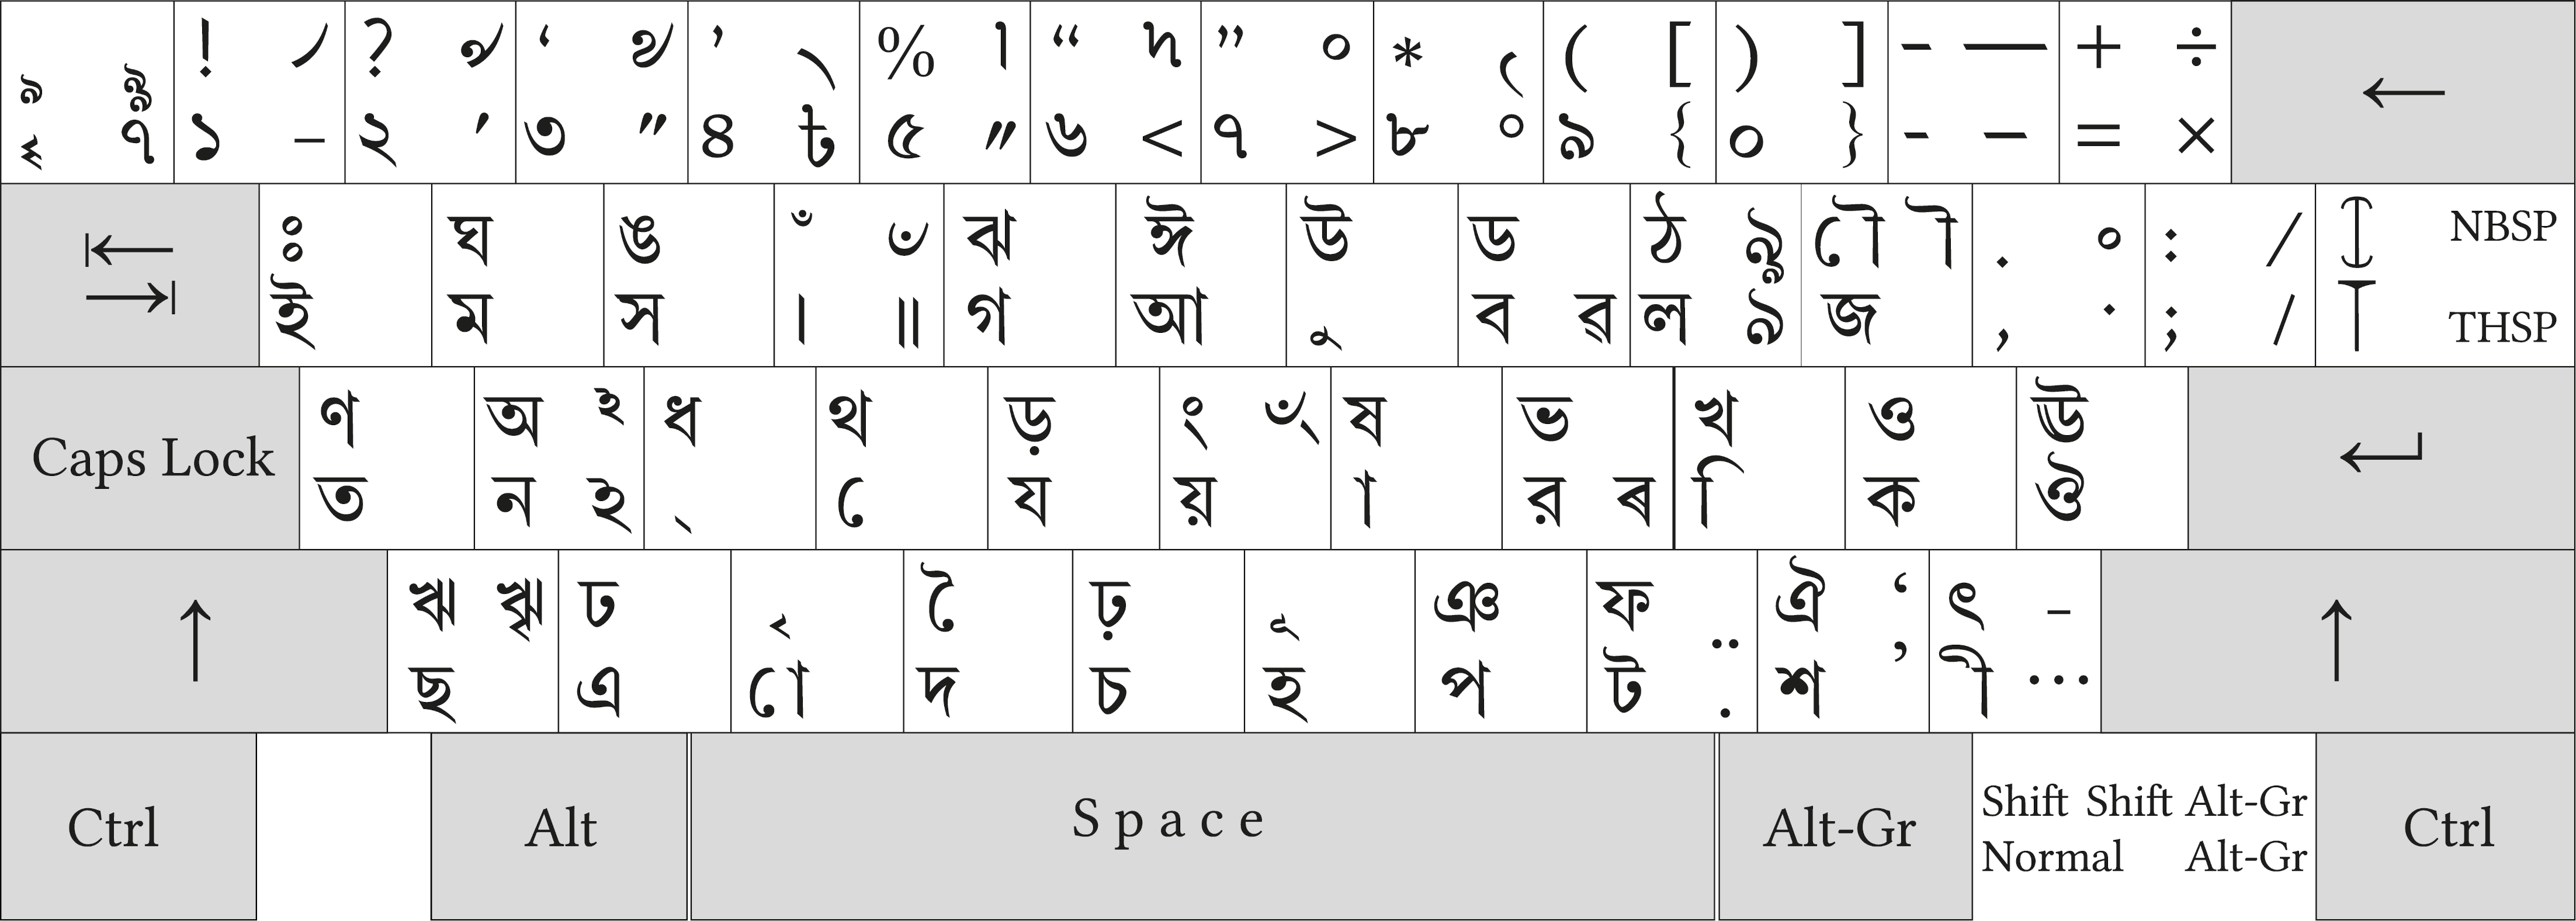 Bengali keyboard layout